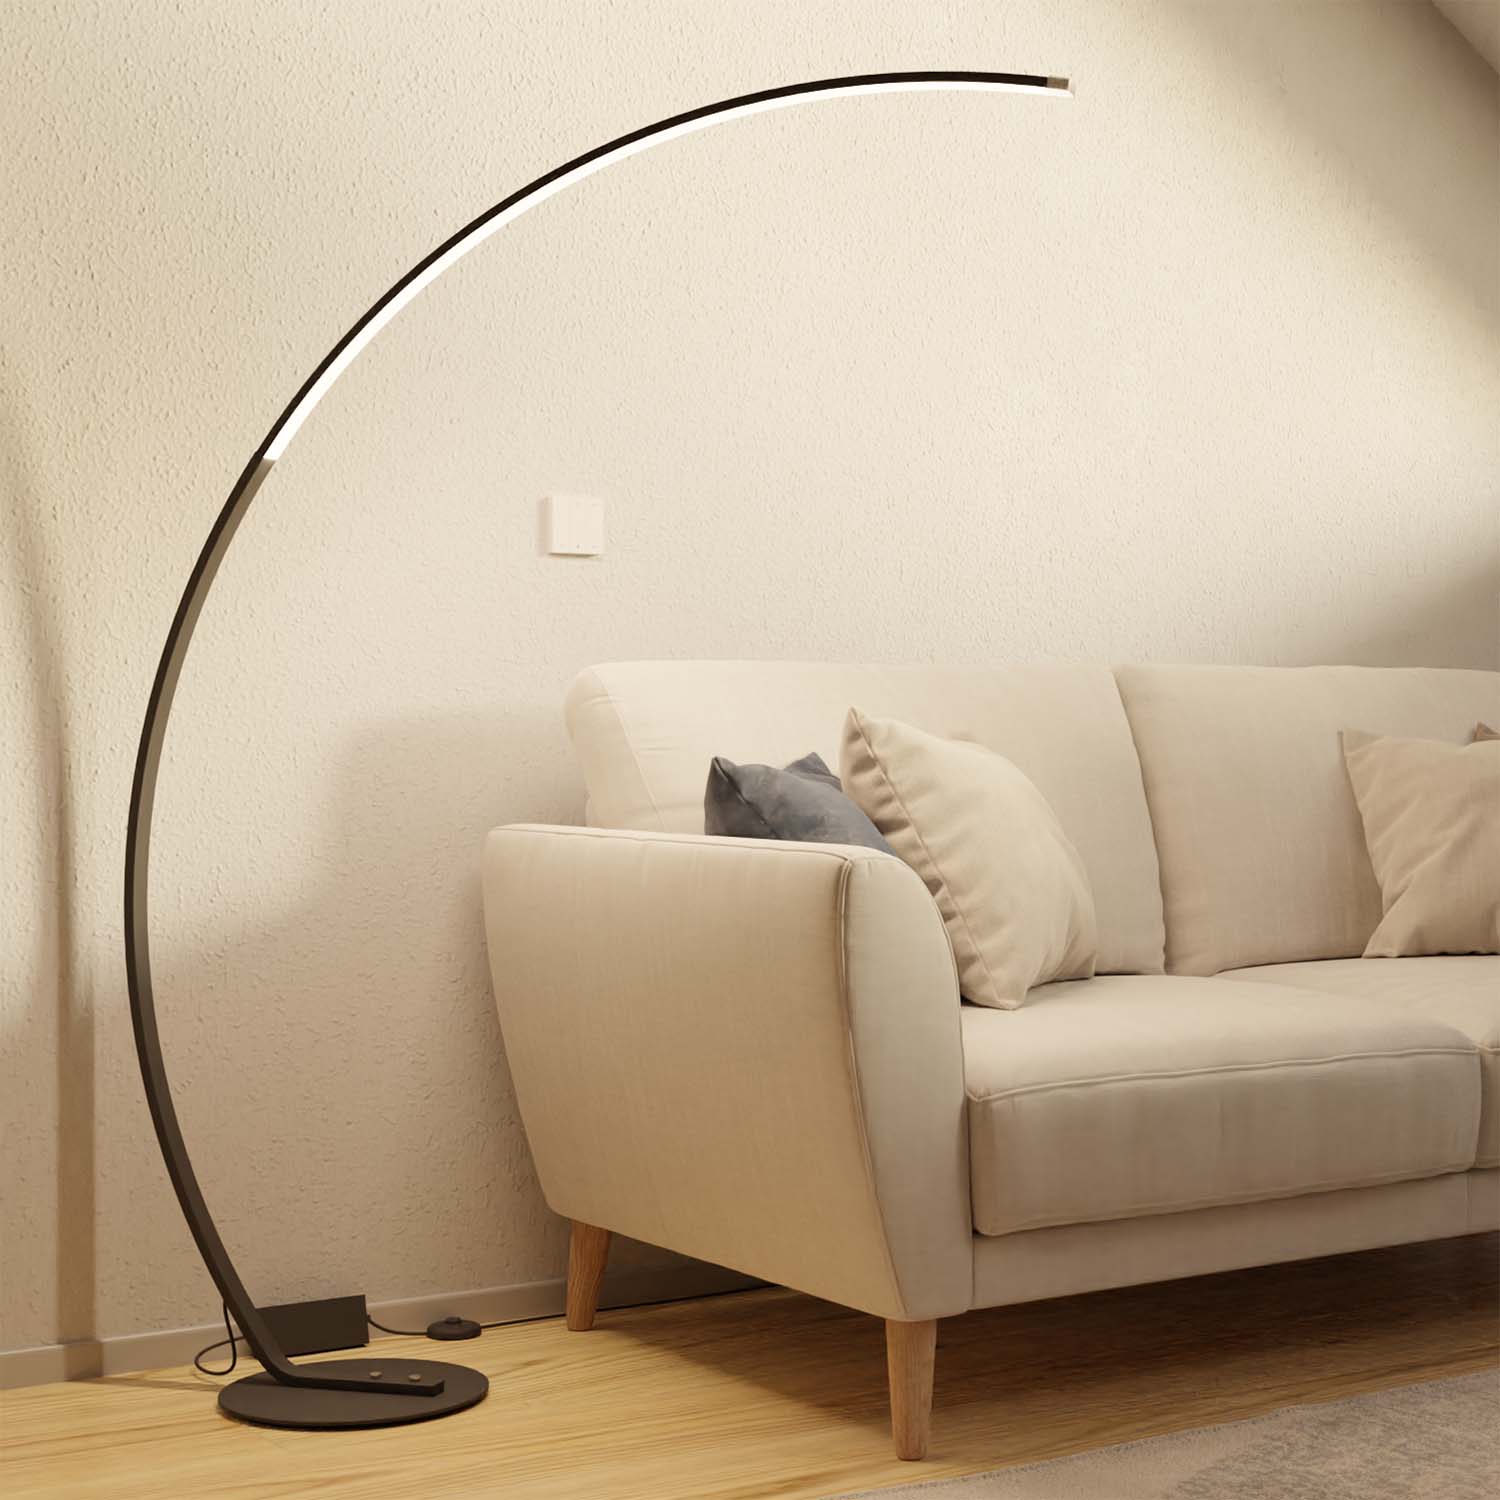 Mavea designer floor lamp